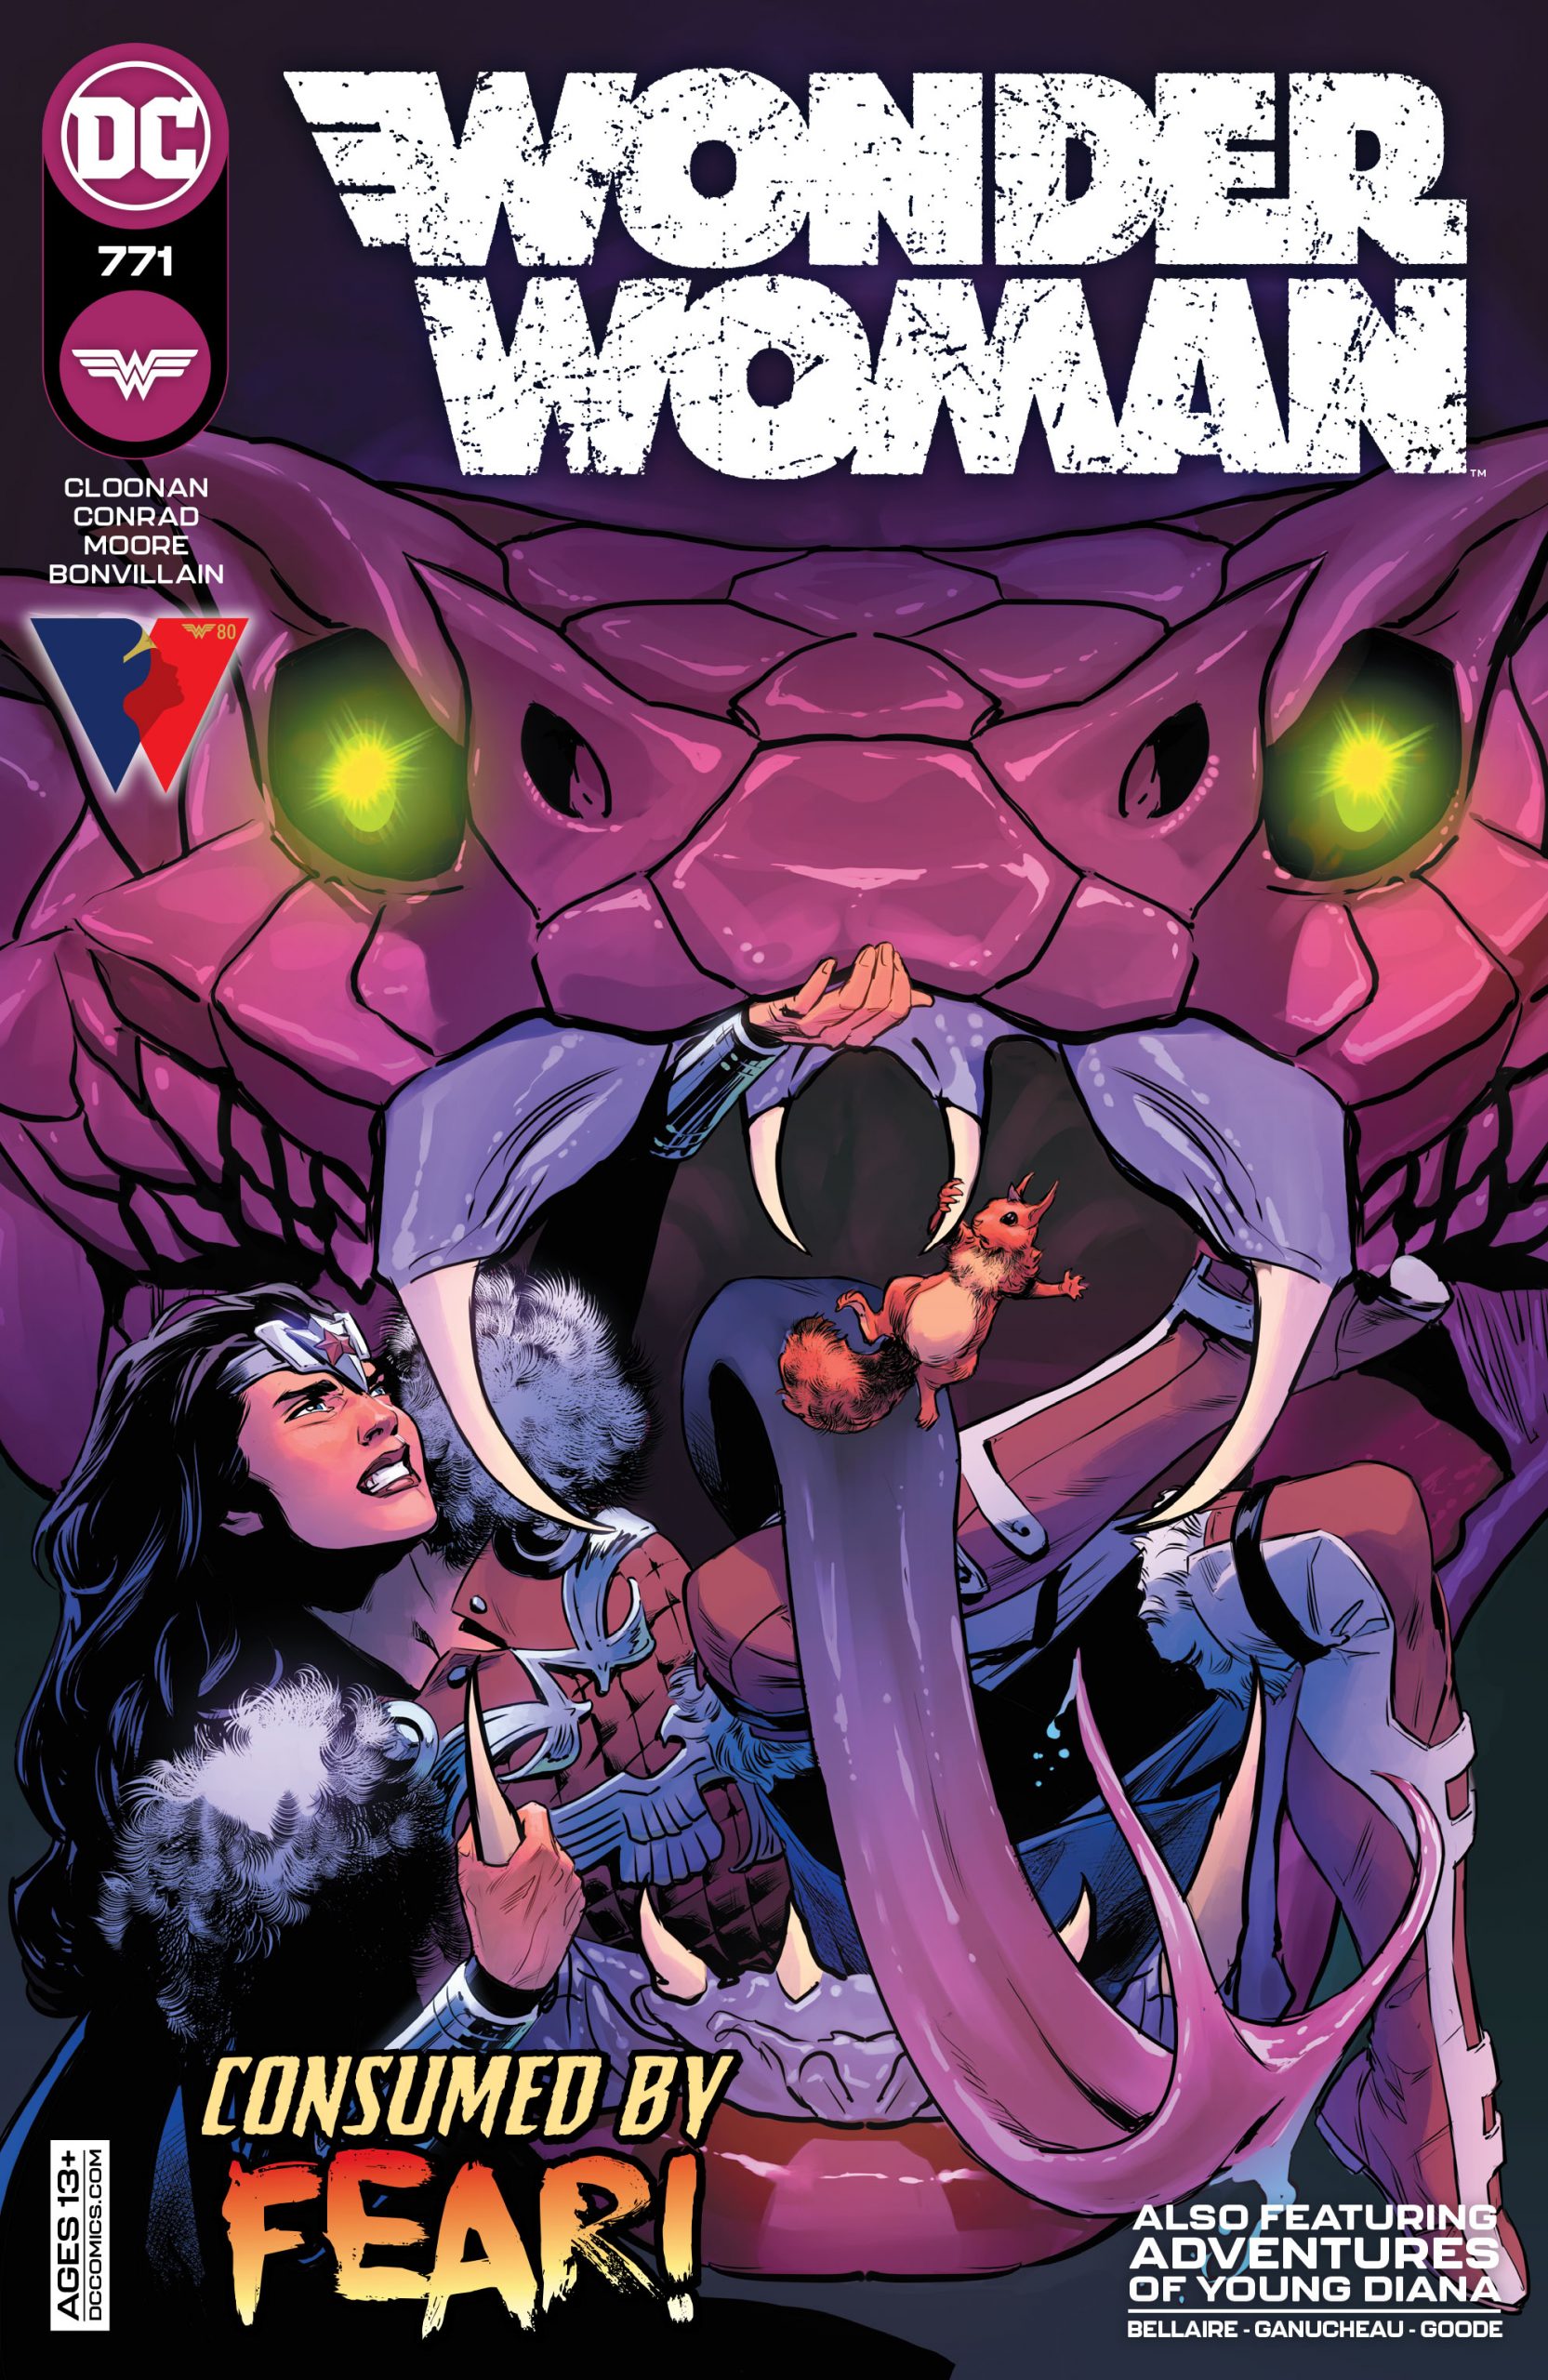 DC Preview: Wonder Woman #771